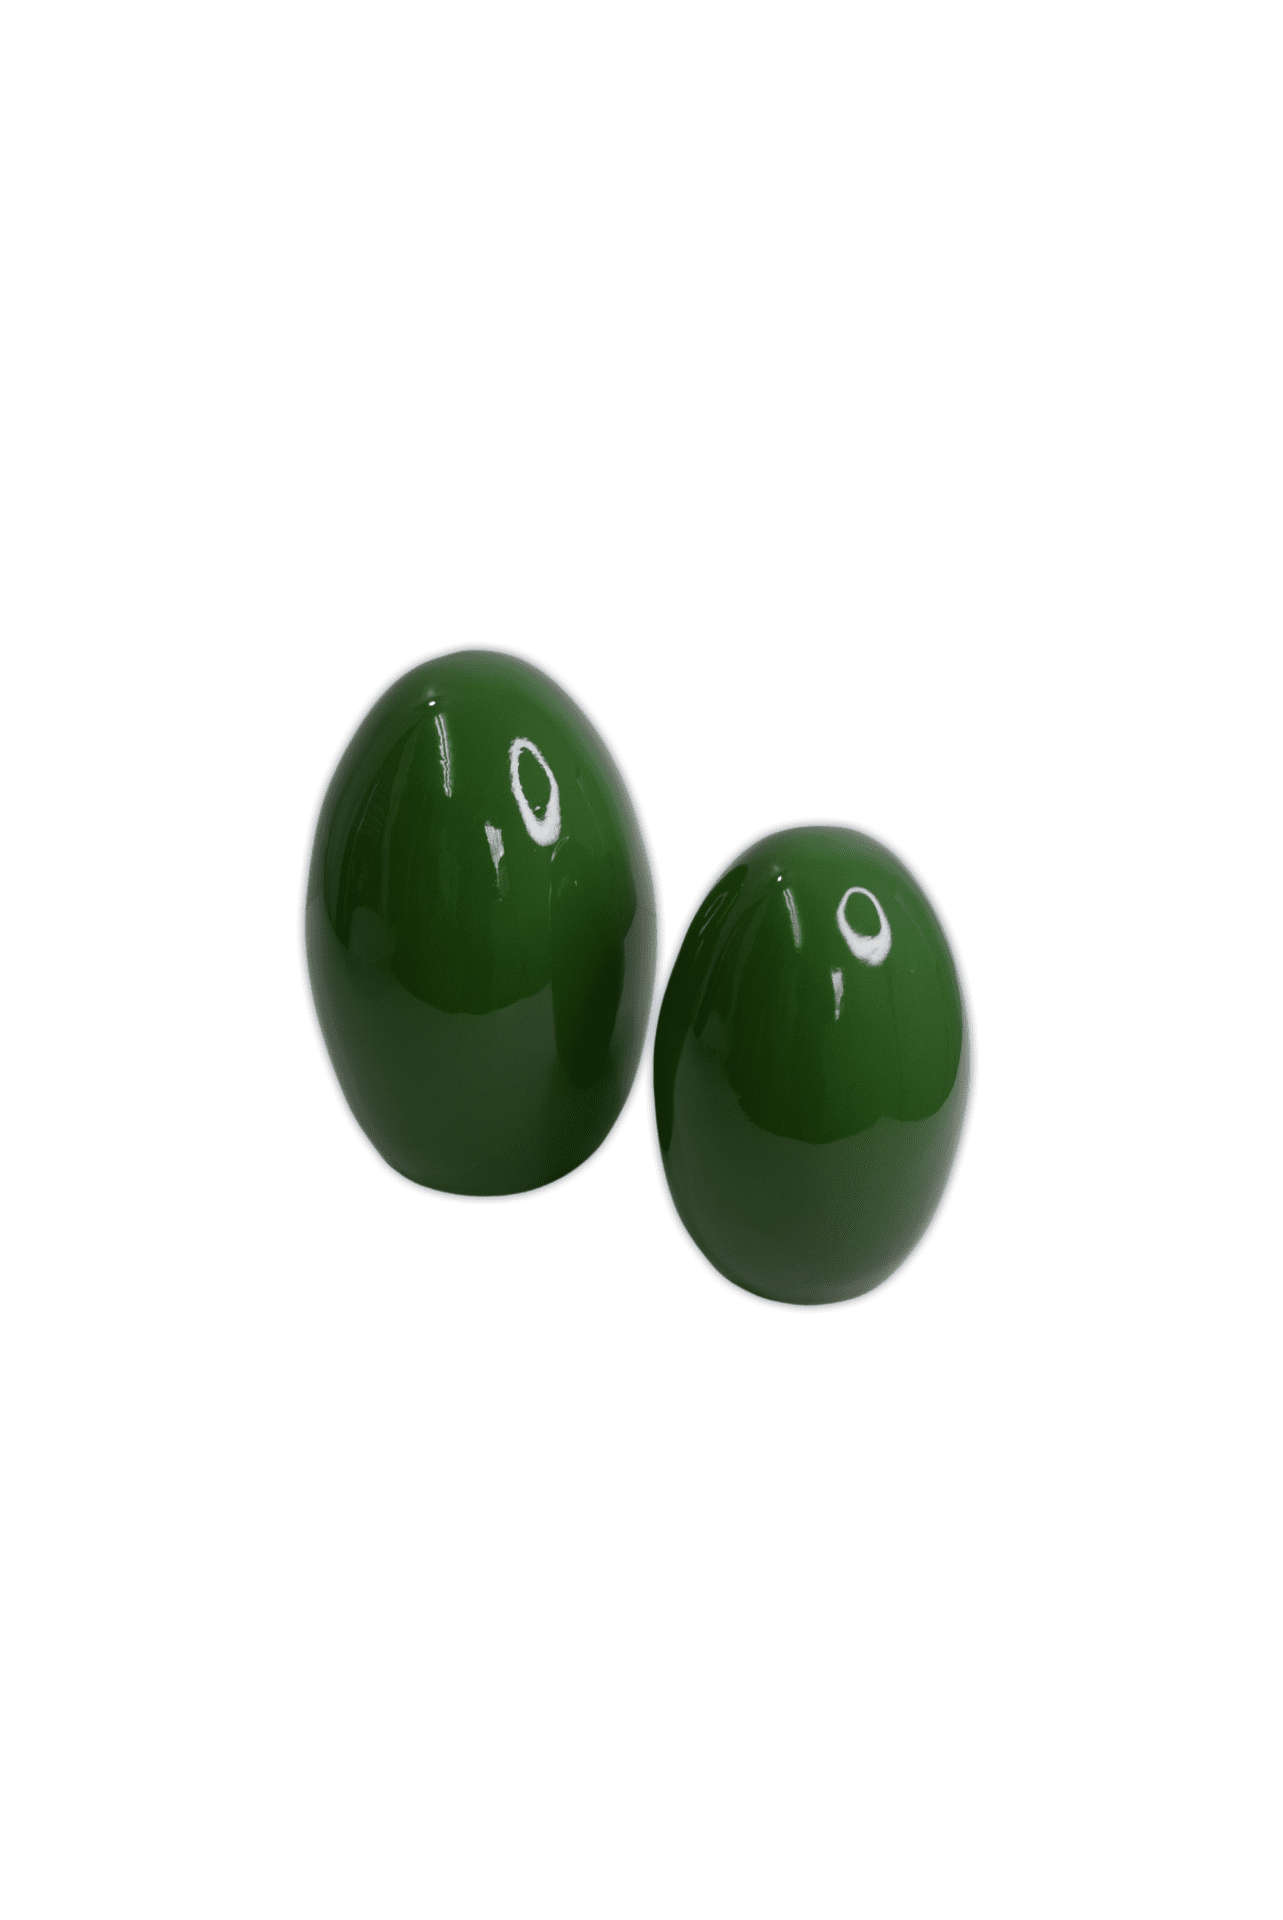 Homedecor, green vases